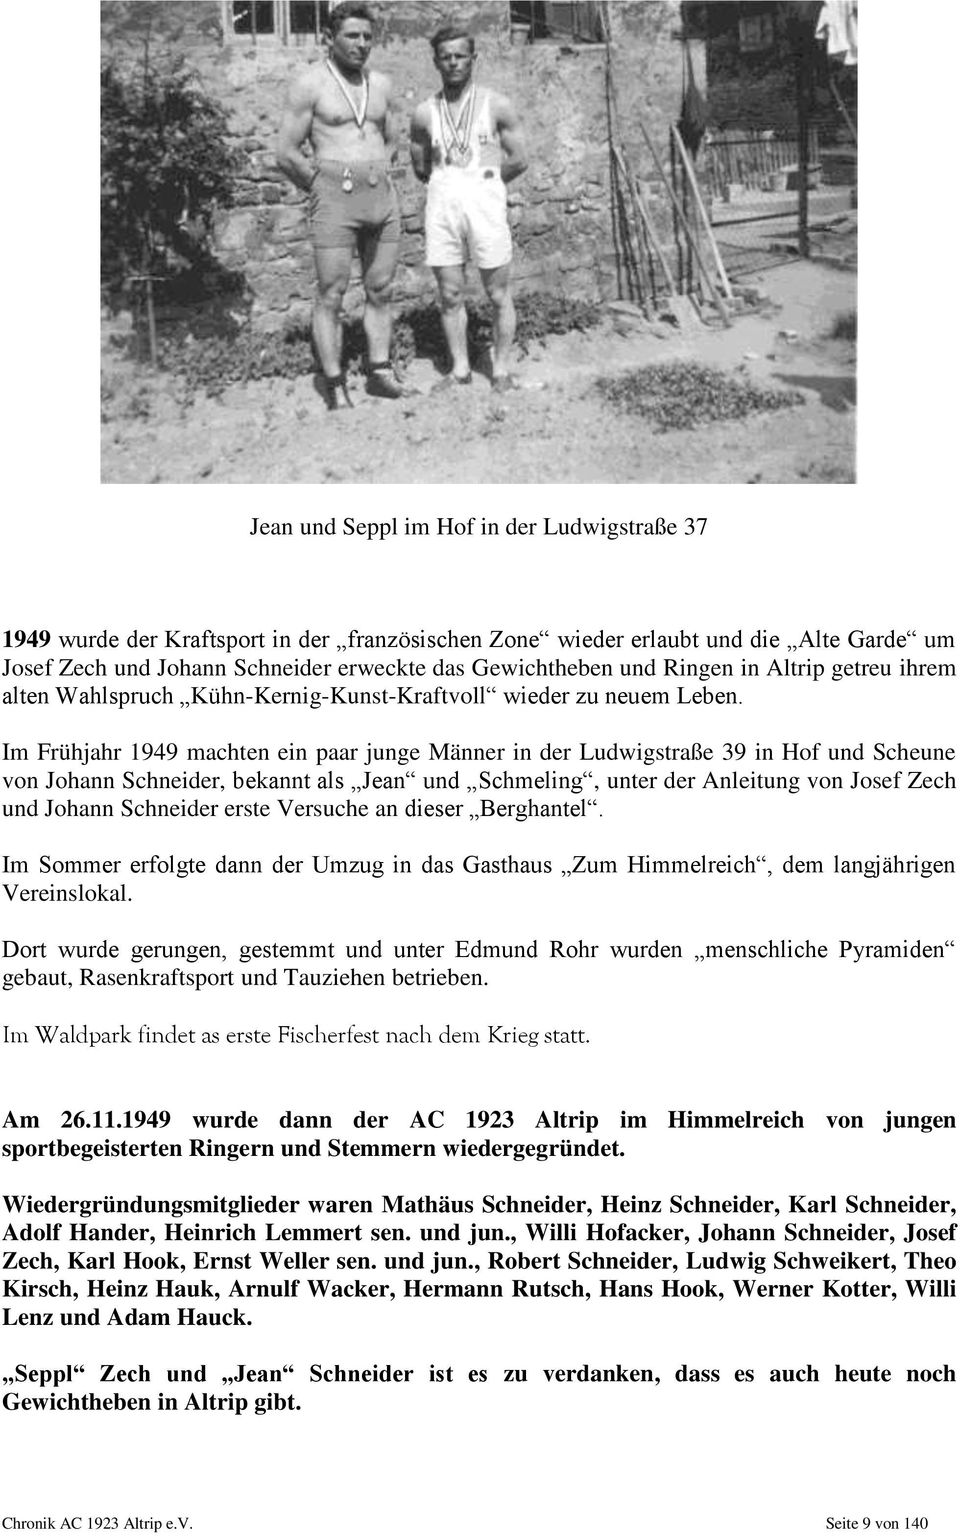 Im Frühjahr 1949 machten ein paar junge Männer in der Ludwigstraße 39 in Hof und Scheune von Johann Schneider, bekannt als Jean und Schmeling, unter der Anleitung von Josef Zech und Johann Schneider